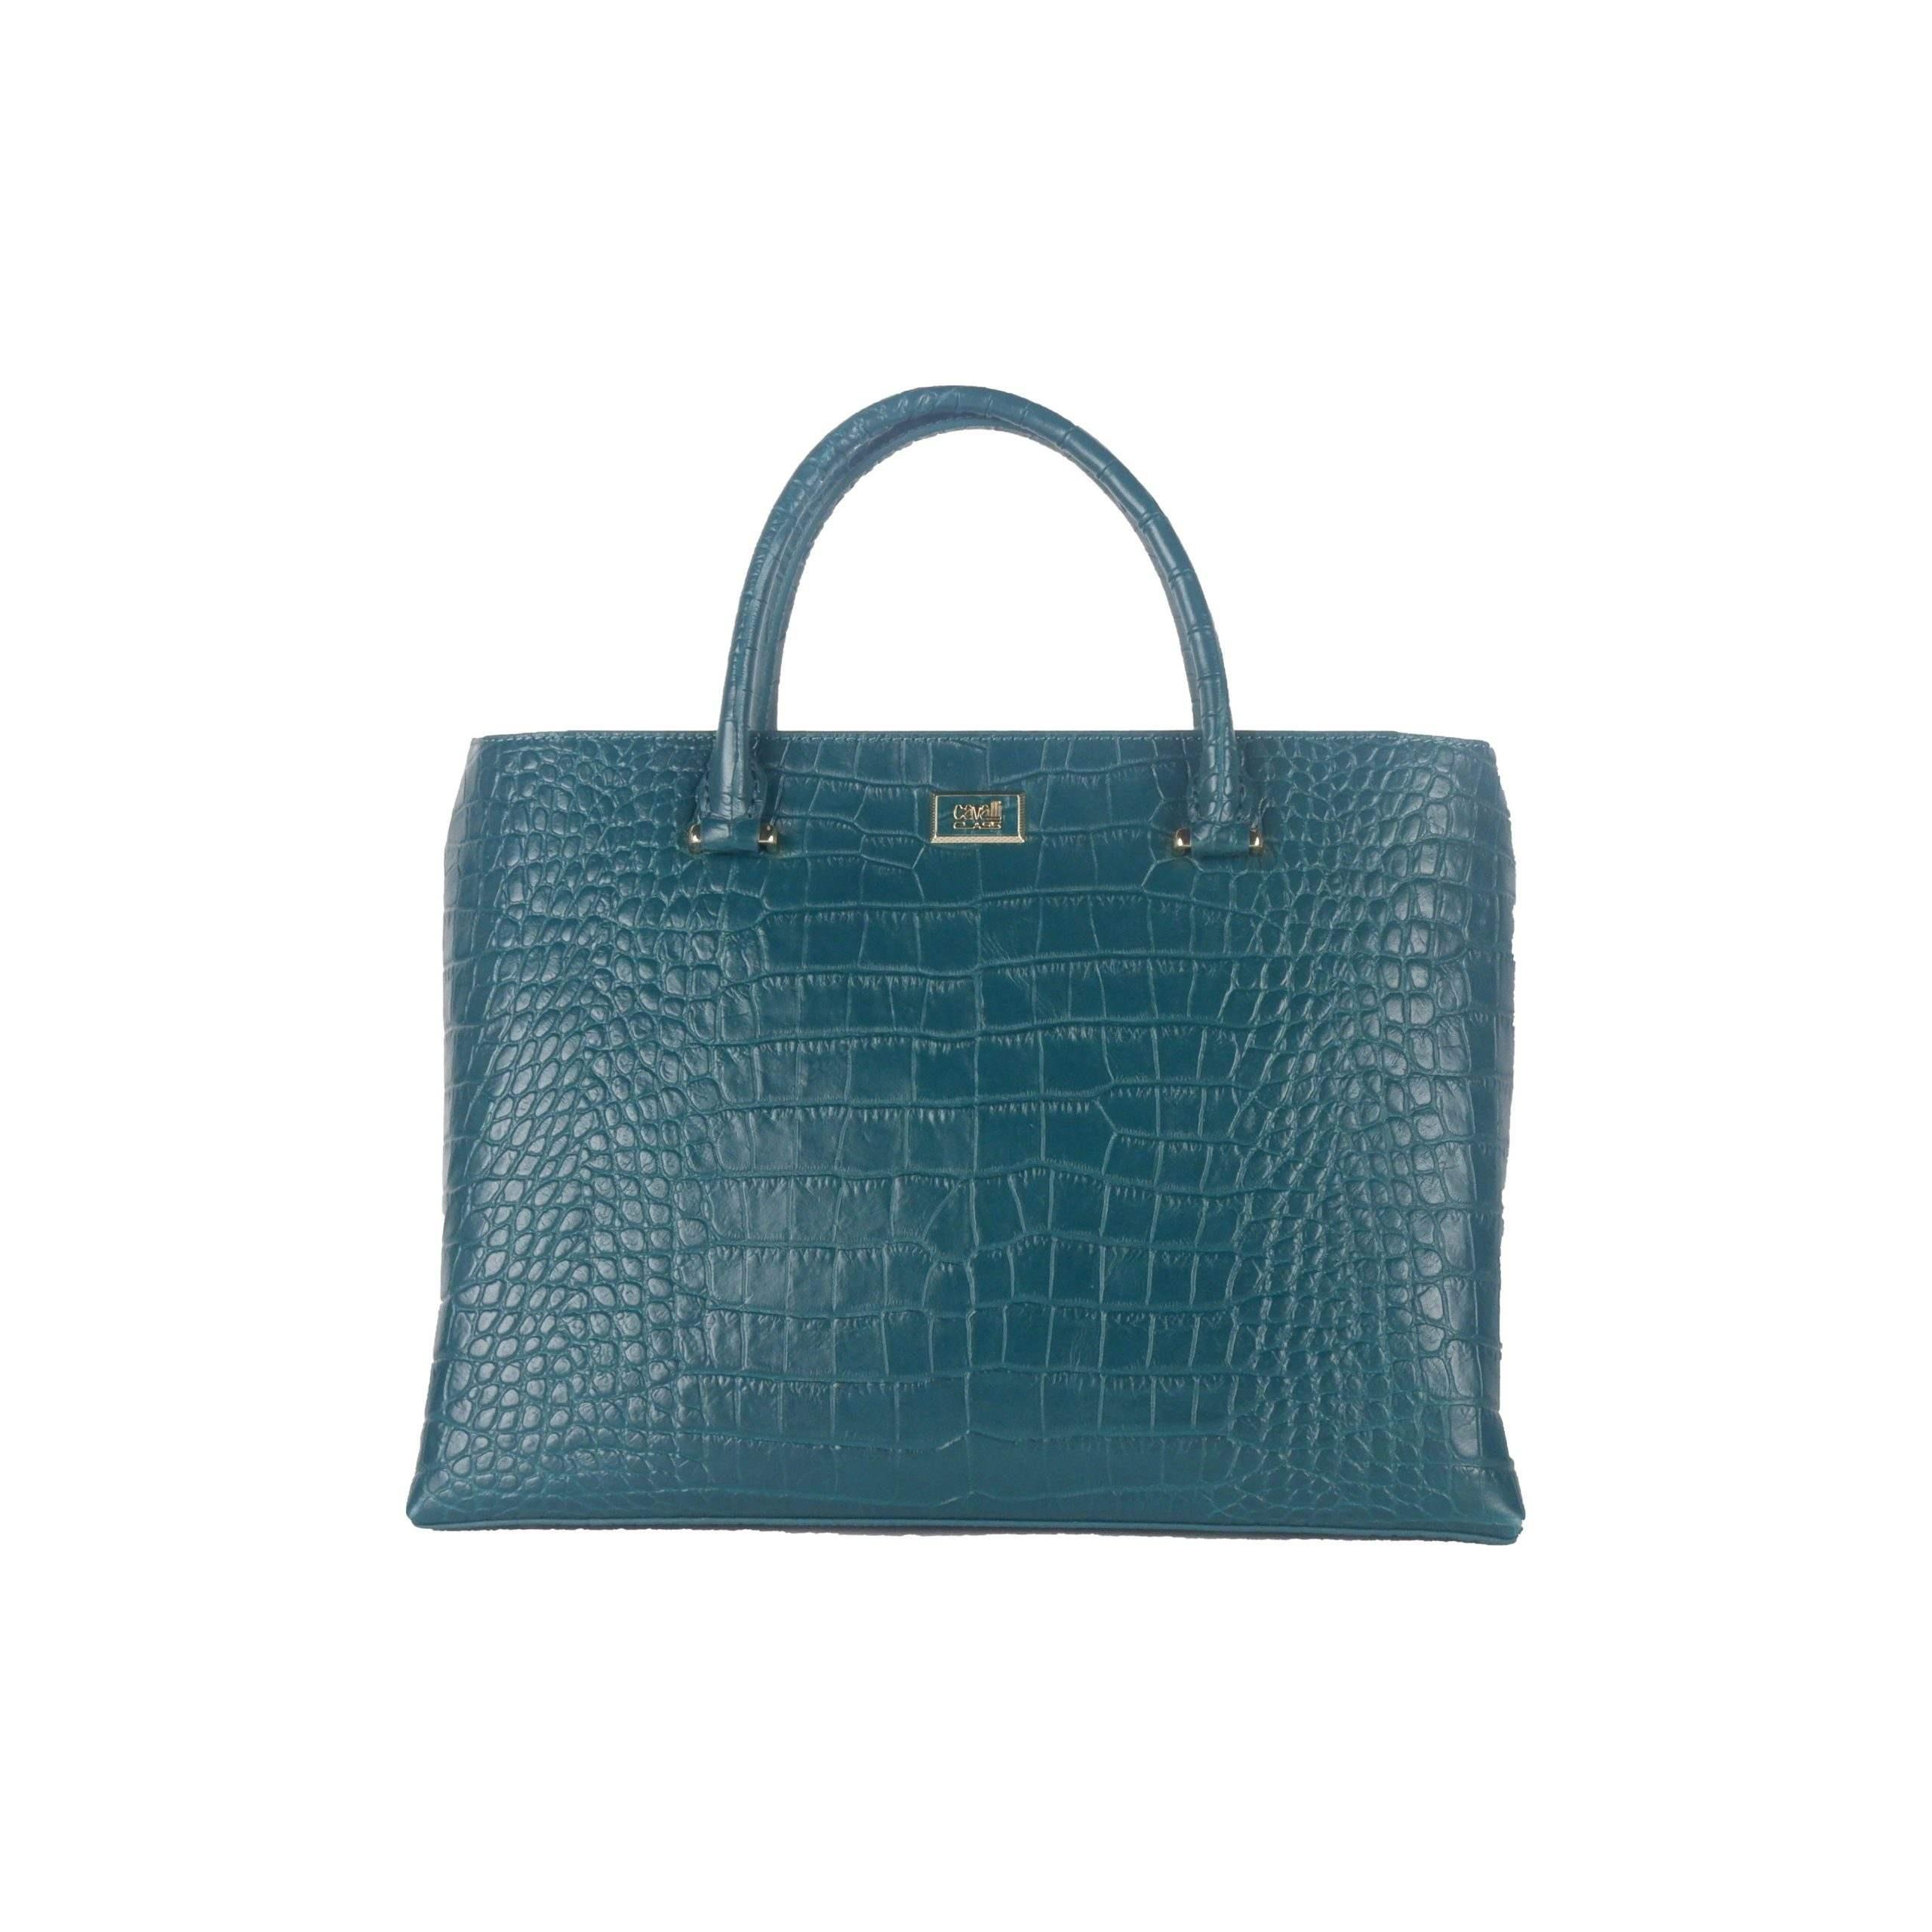 Roberto Cavalli Handbag in Blue - Lyst